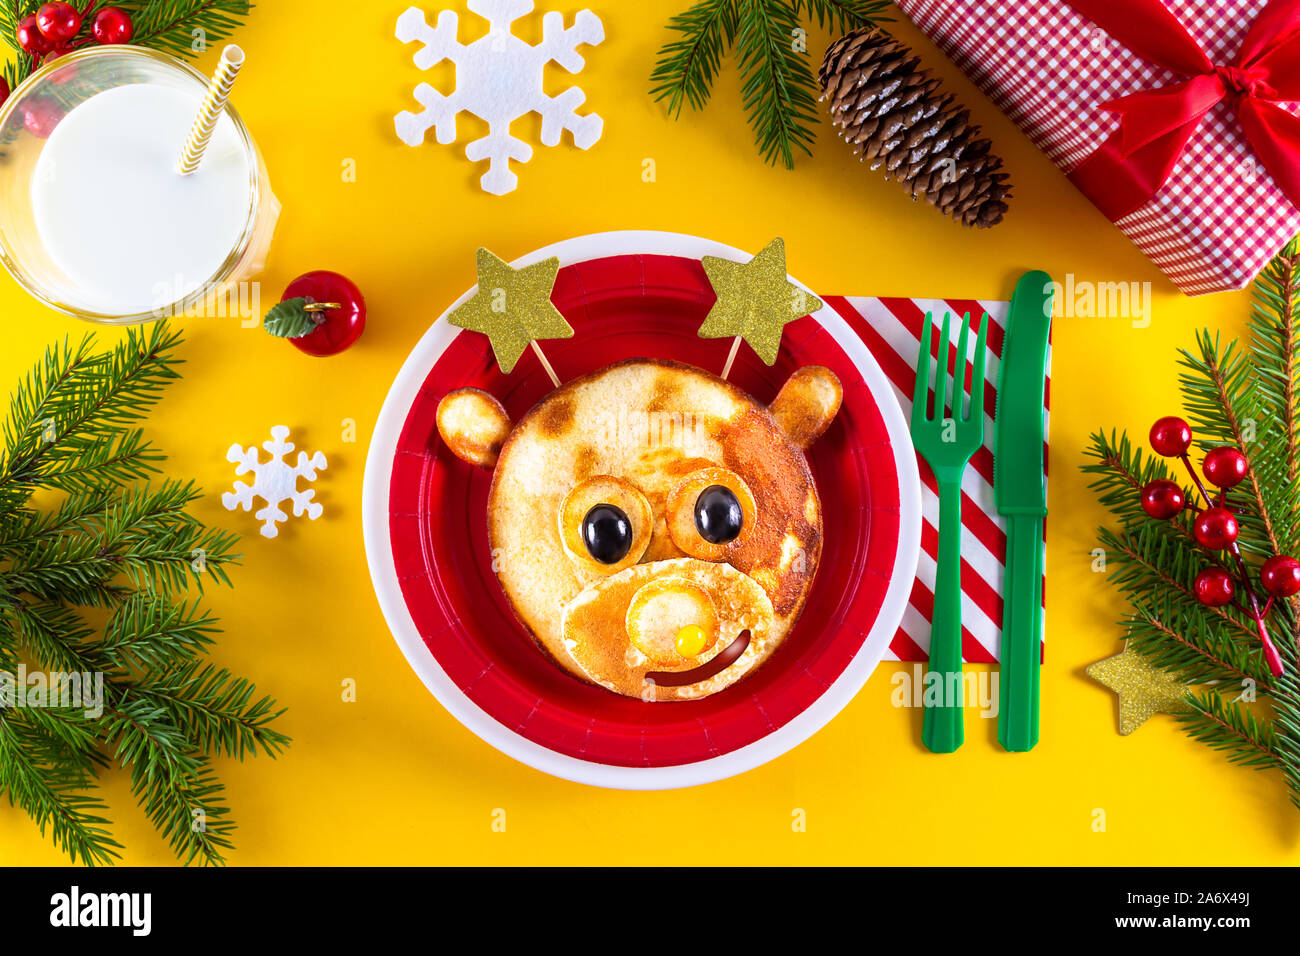 Das kreative Weihnachten Kind essen Kunst essbare Hirsche auf rote Platte mit Sterne statt Hörner als xmas Frühstück. Art, niedliche Rehe aus Pfannkuchen und Beeren. Stockfoto